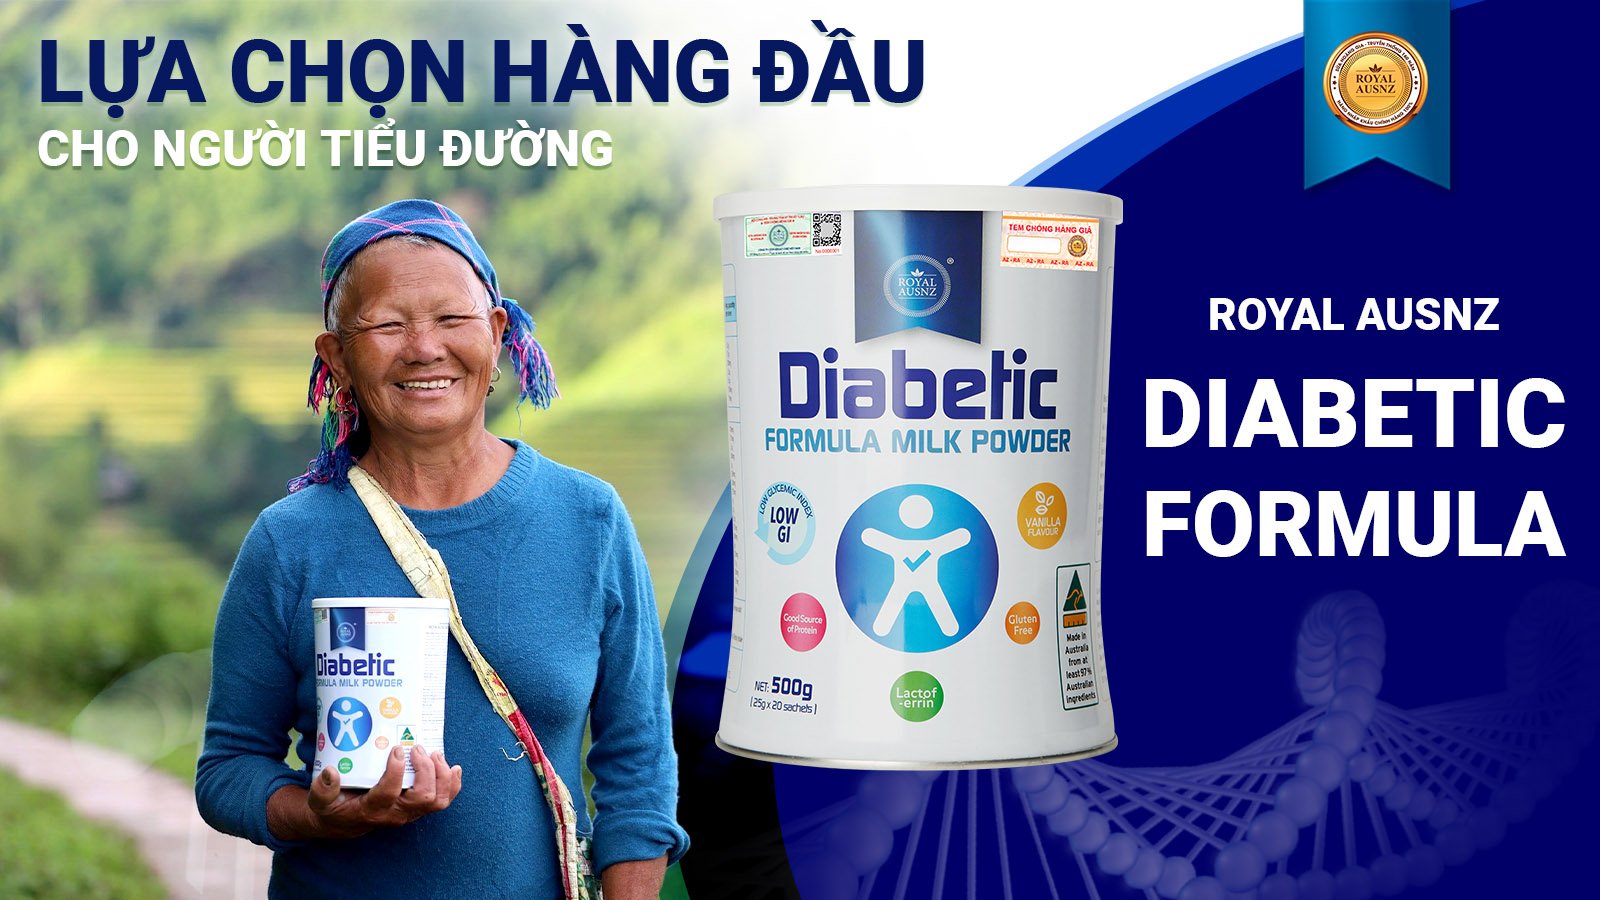  Royal Ausnz Diabetic - Sản phẩm người tiểu đường không thể bỏ qua